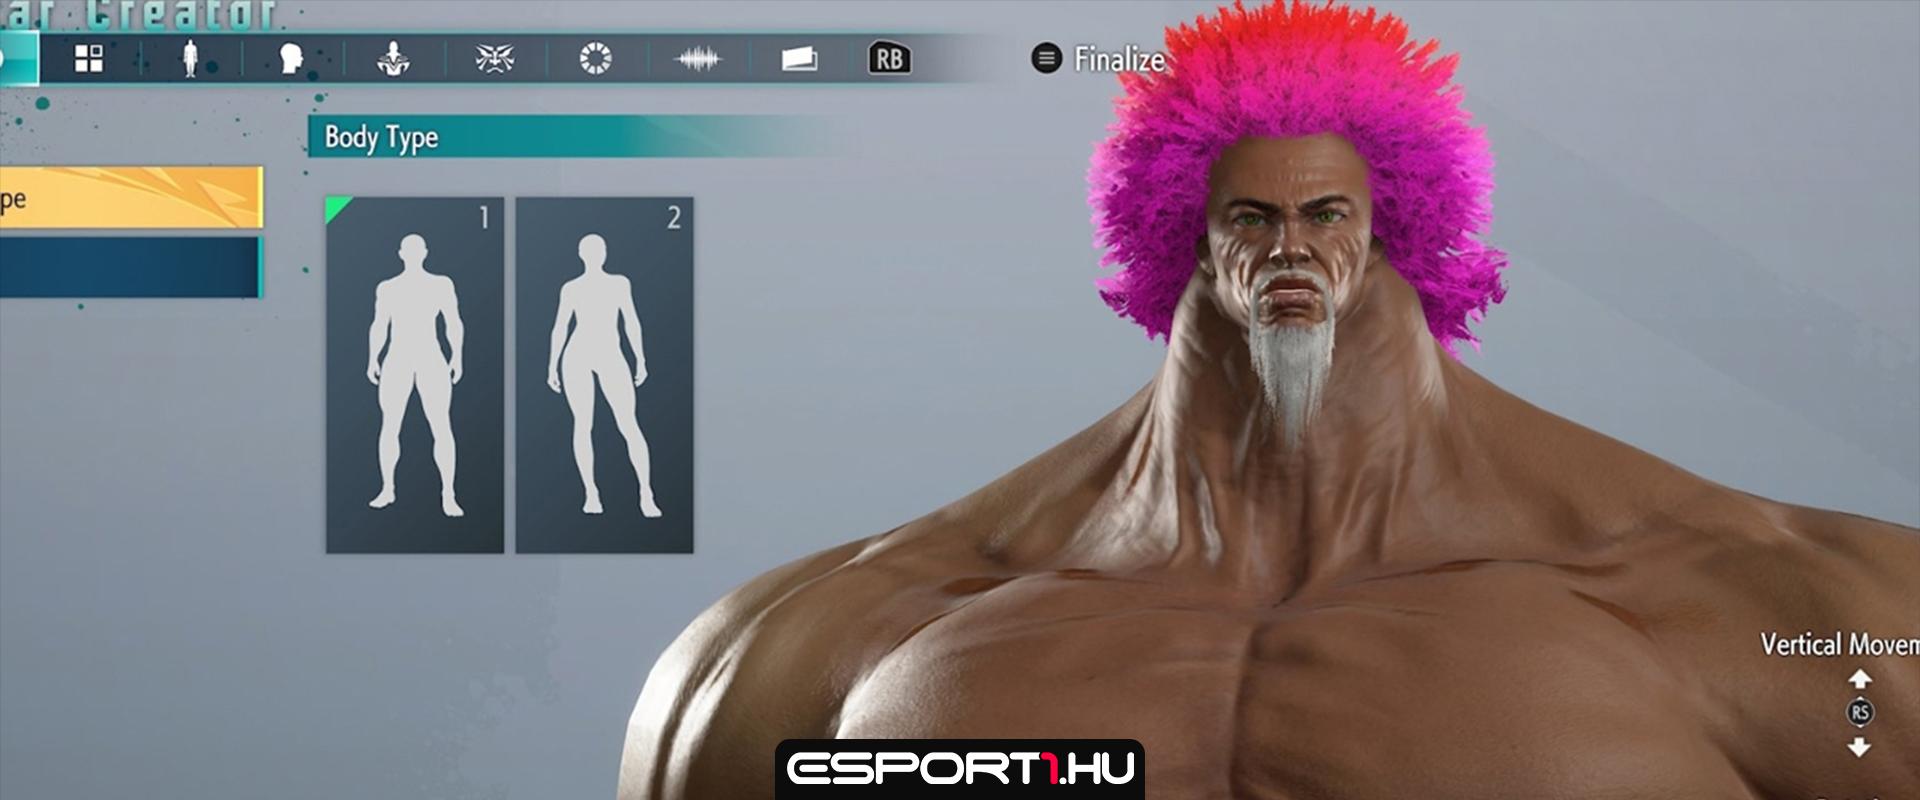 Horrorisztikus és poénos avatarokat lehet alkotni a Street Fighter 6 karakterkészítő módjában